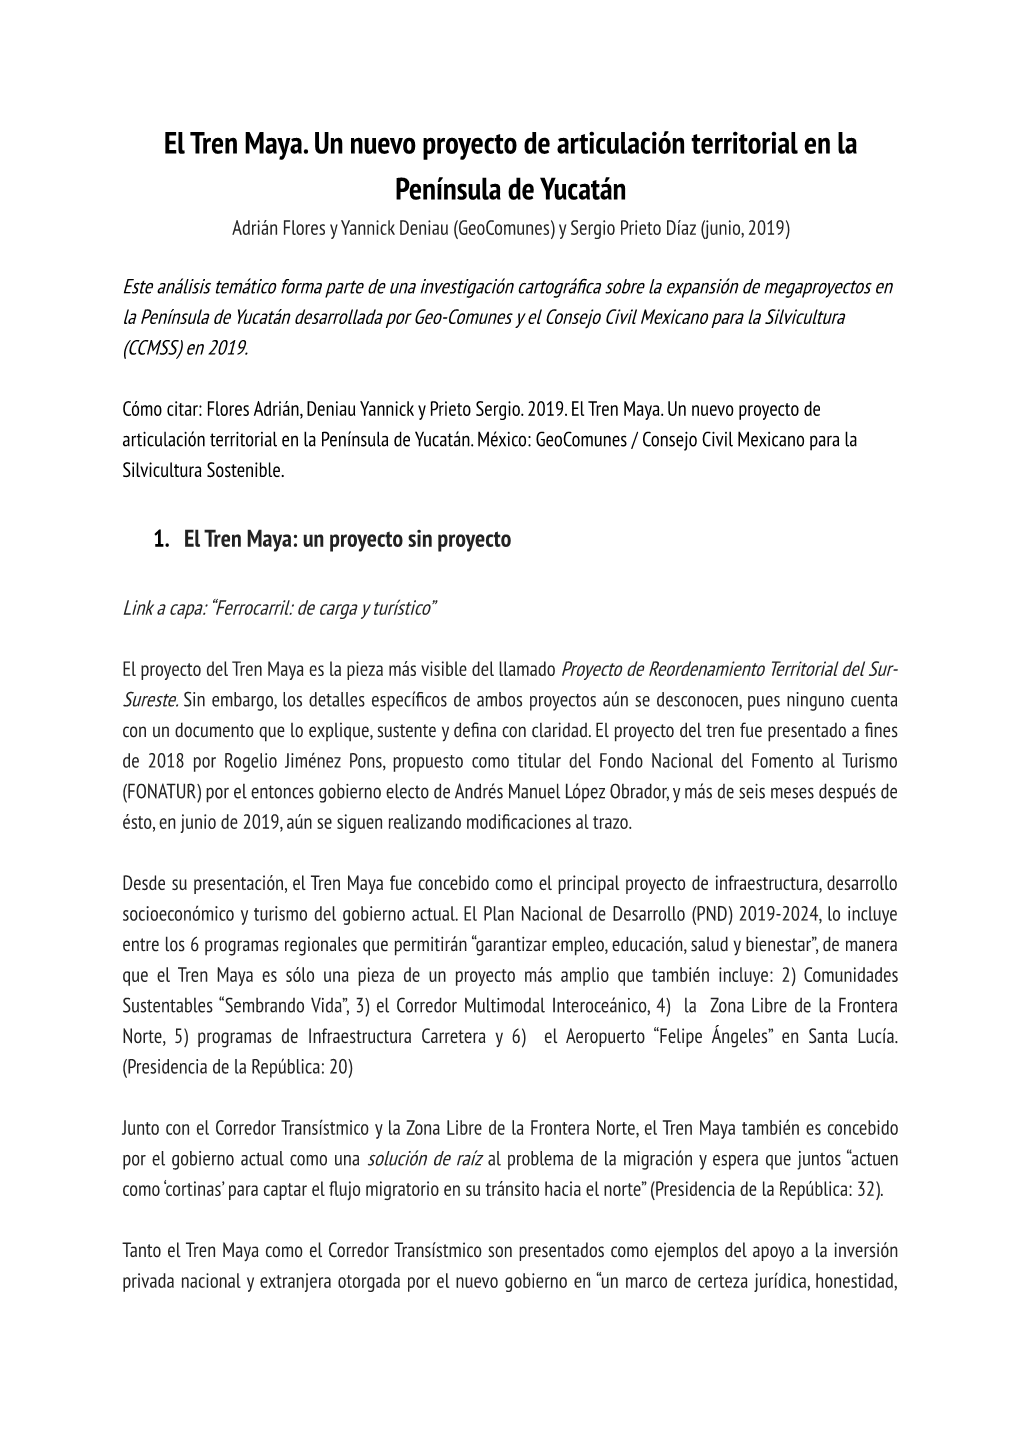 El Tren Maya. Un Nuevo Proyecto De Articulación Territorial En La Península De Yucatán Adrián Flores Y Yannick Deniau (Geocomunes) Y Sergio Prieto Díaz (Junio, 2019)